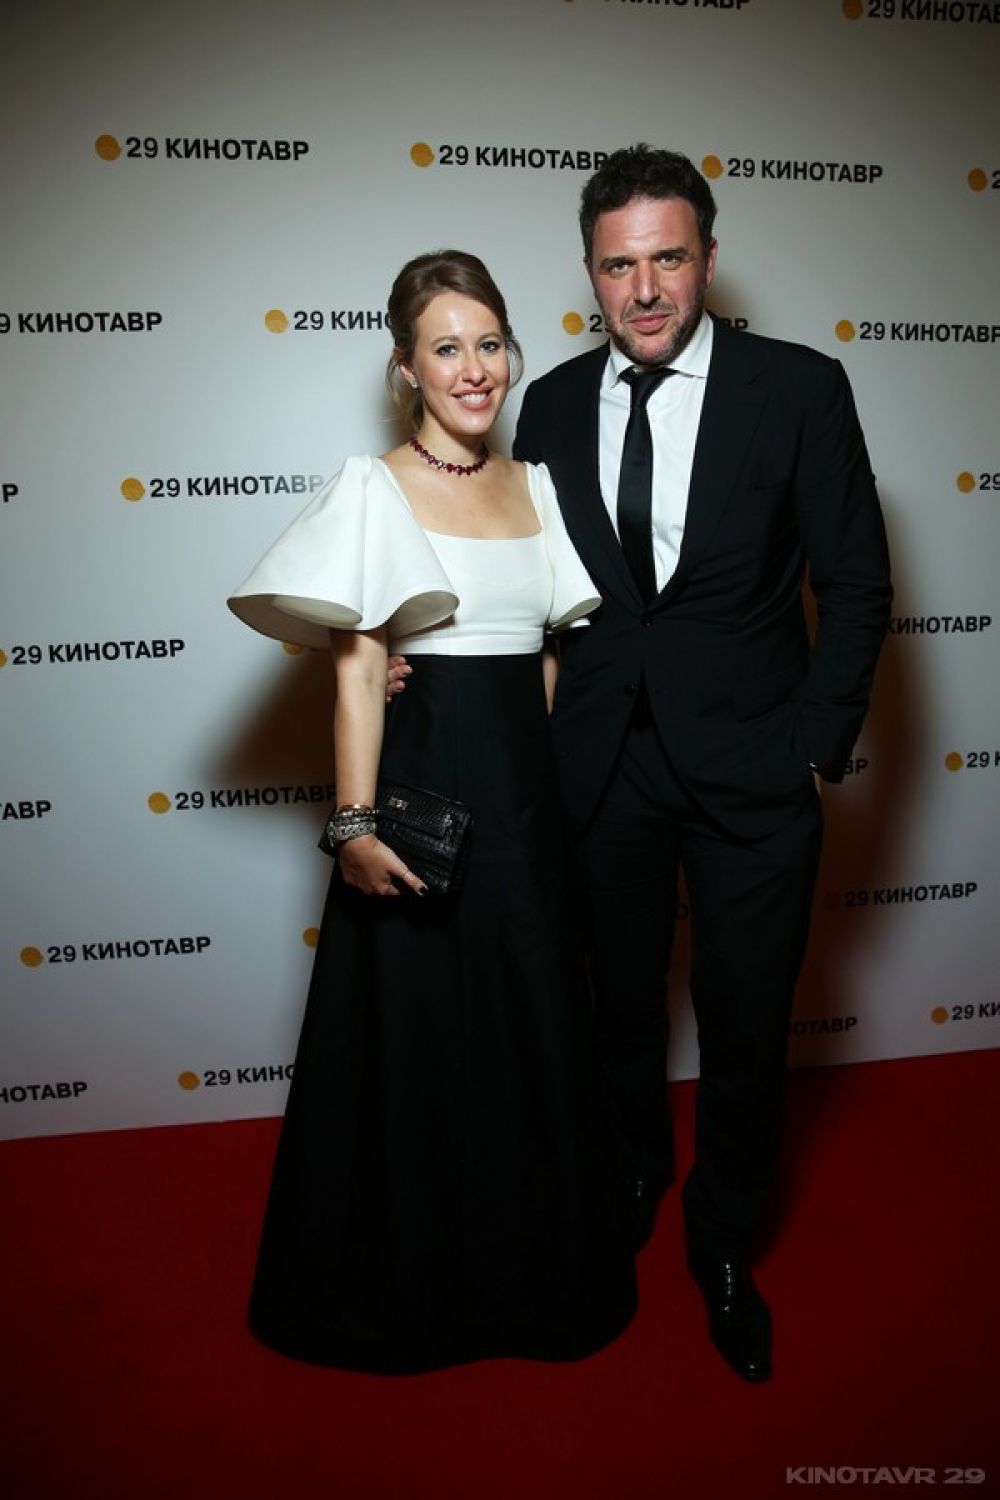 Ксения Собчак (в платье российского дизайнера Вики Газинской) с супругом, актёром Максимом Виторганом.